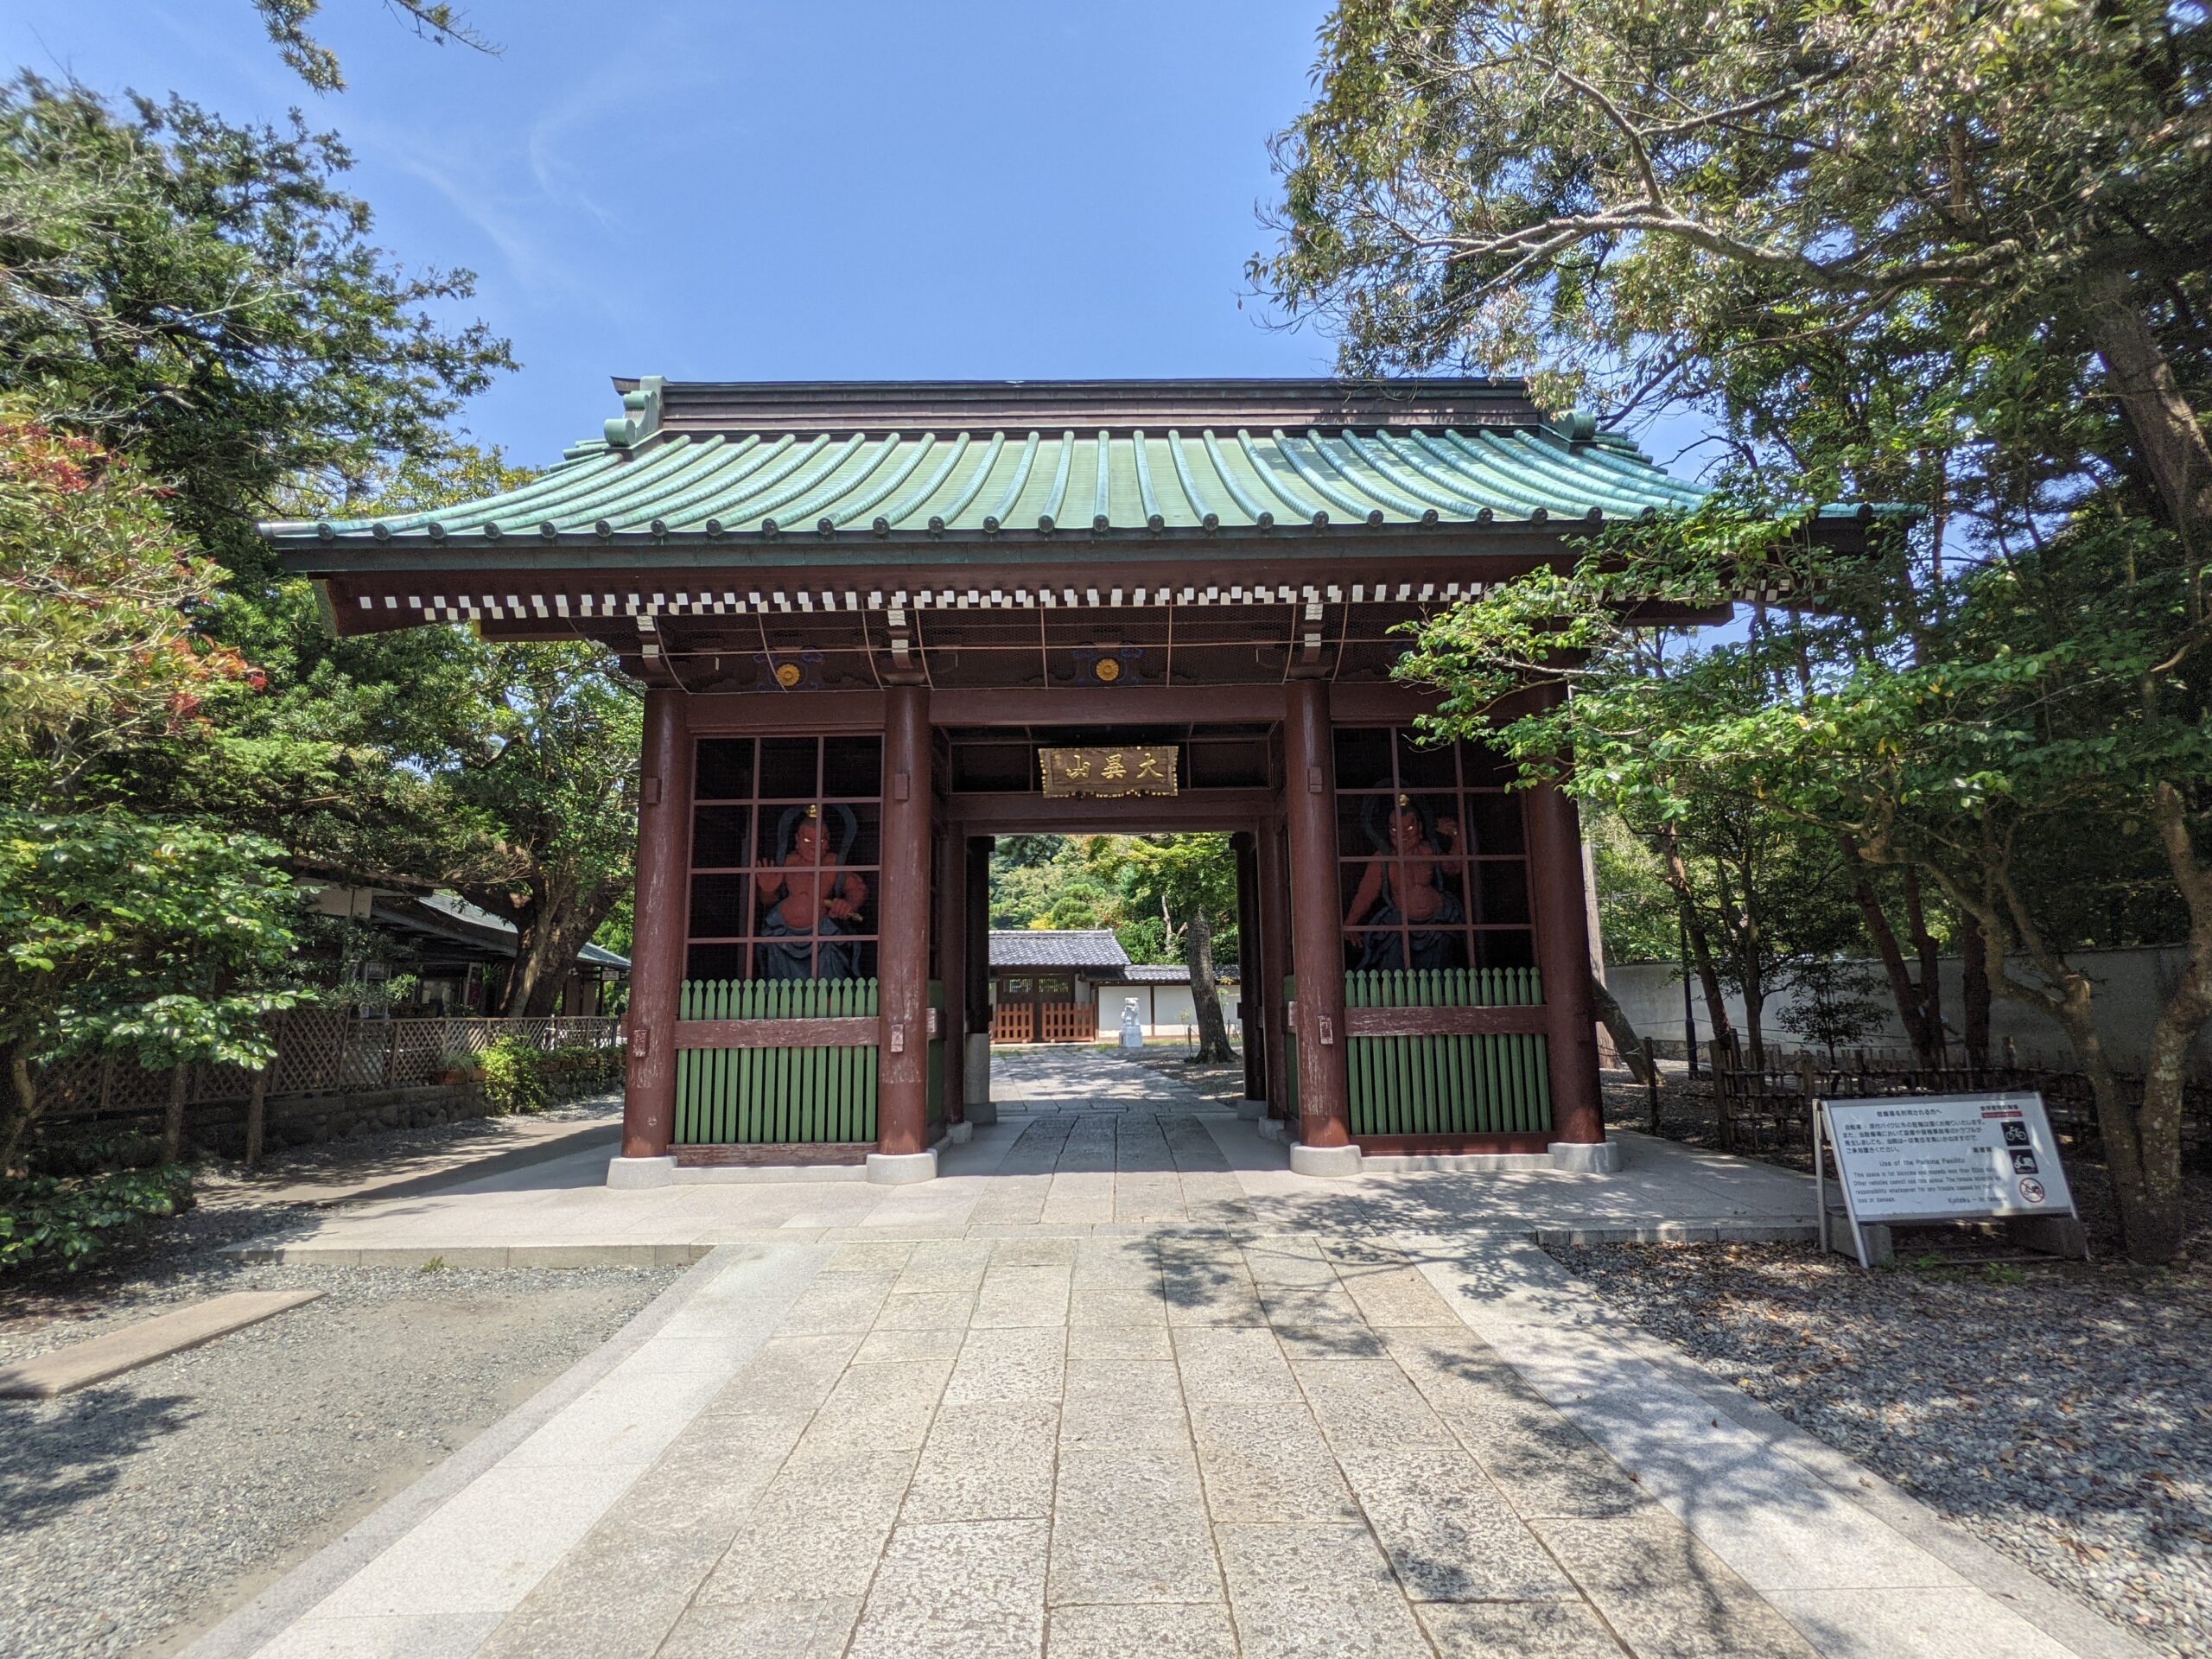 鎌倉 高徳院の仁王門